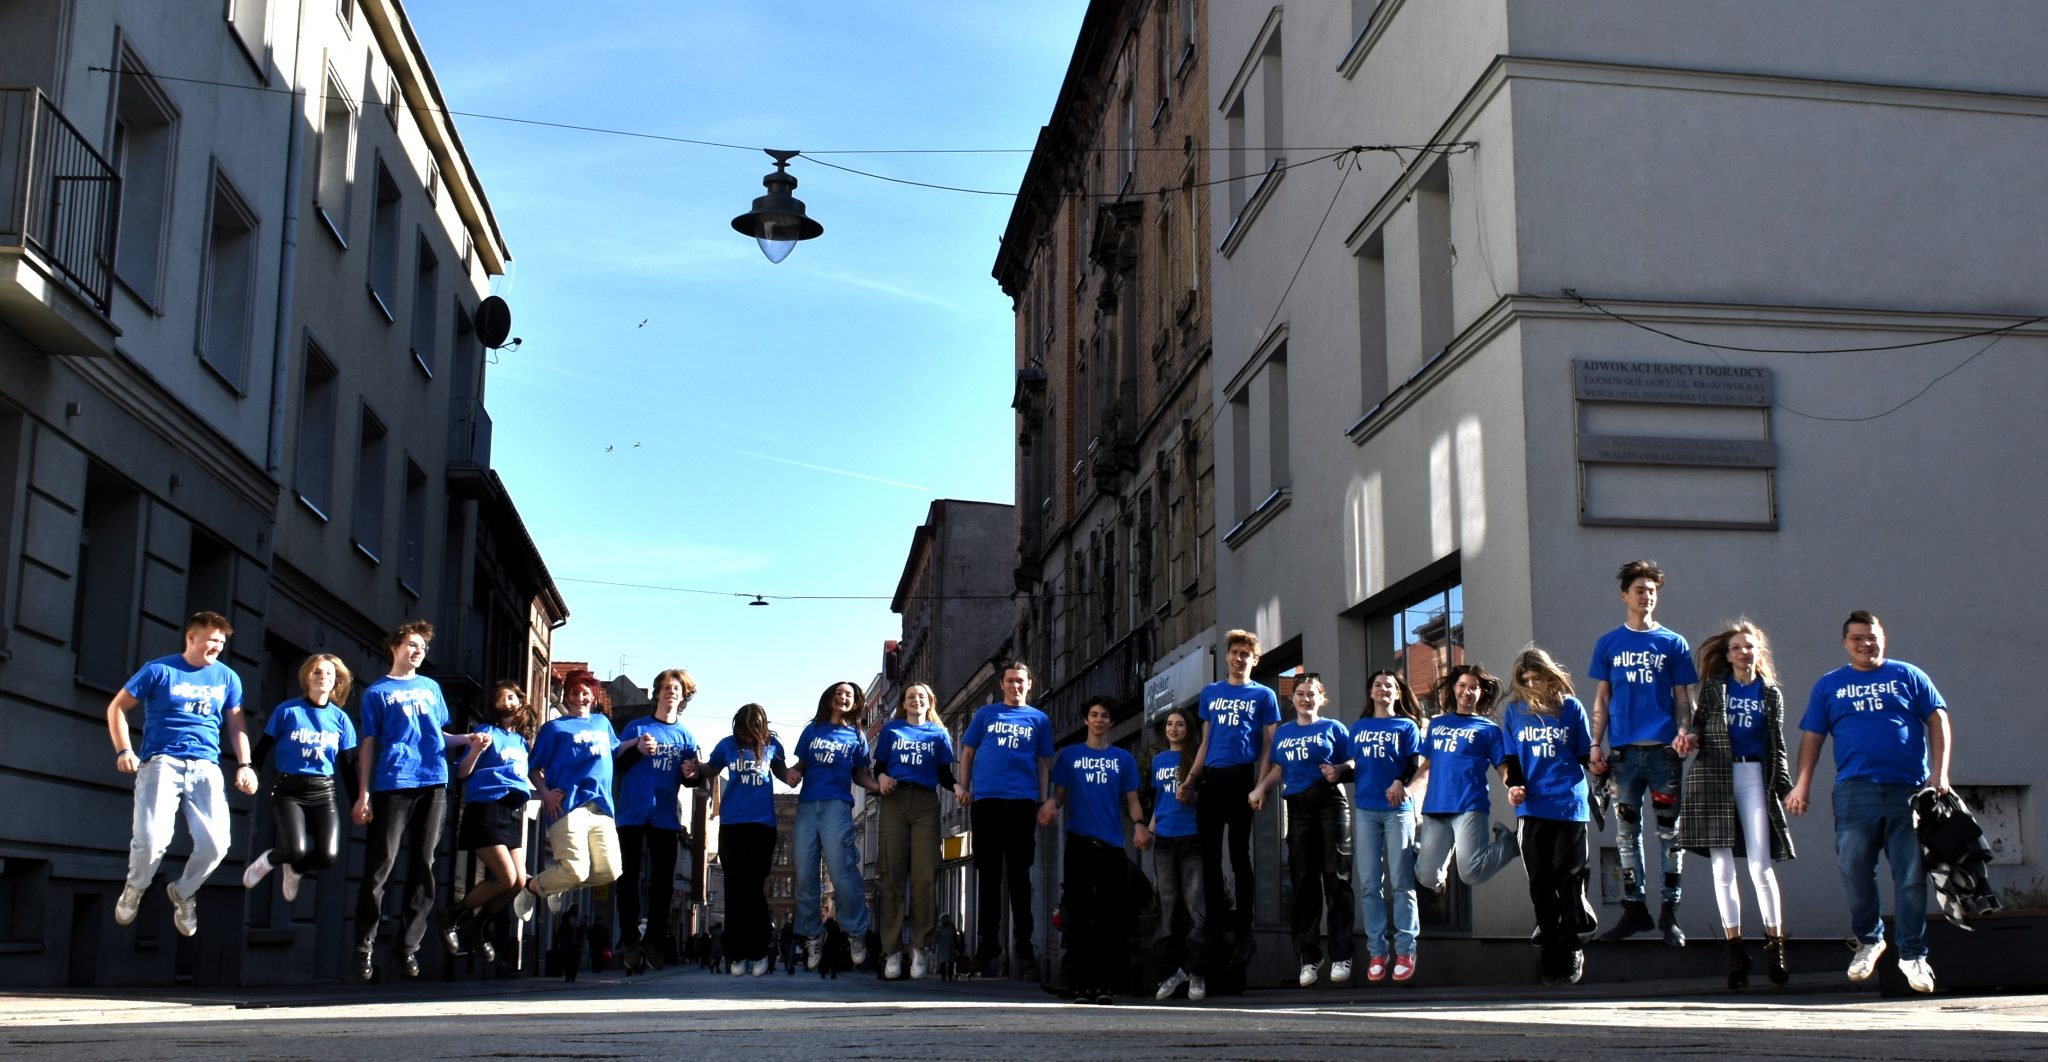 Grupa młodzieży w niebieskich koszulkach.